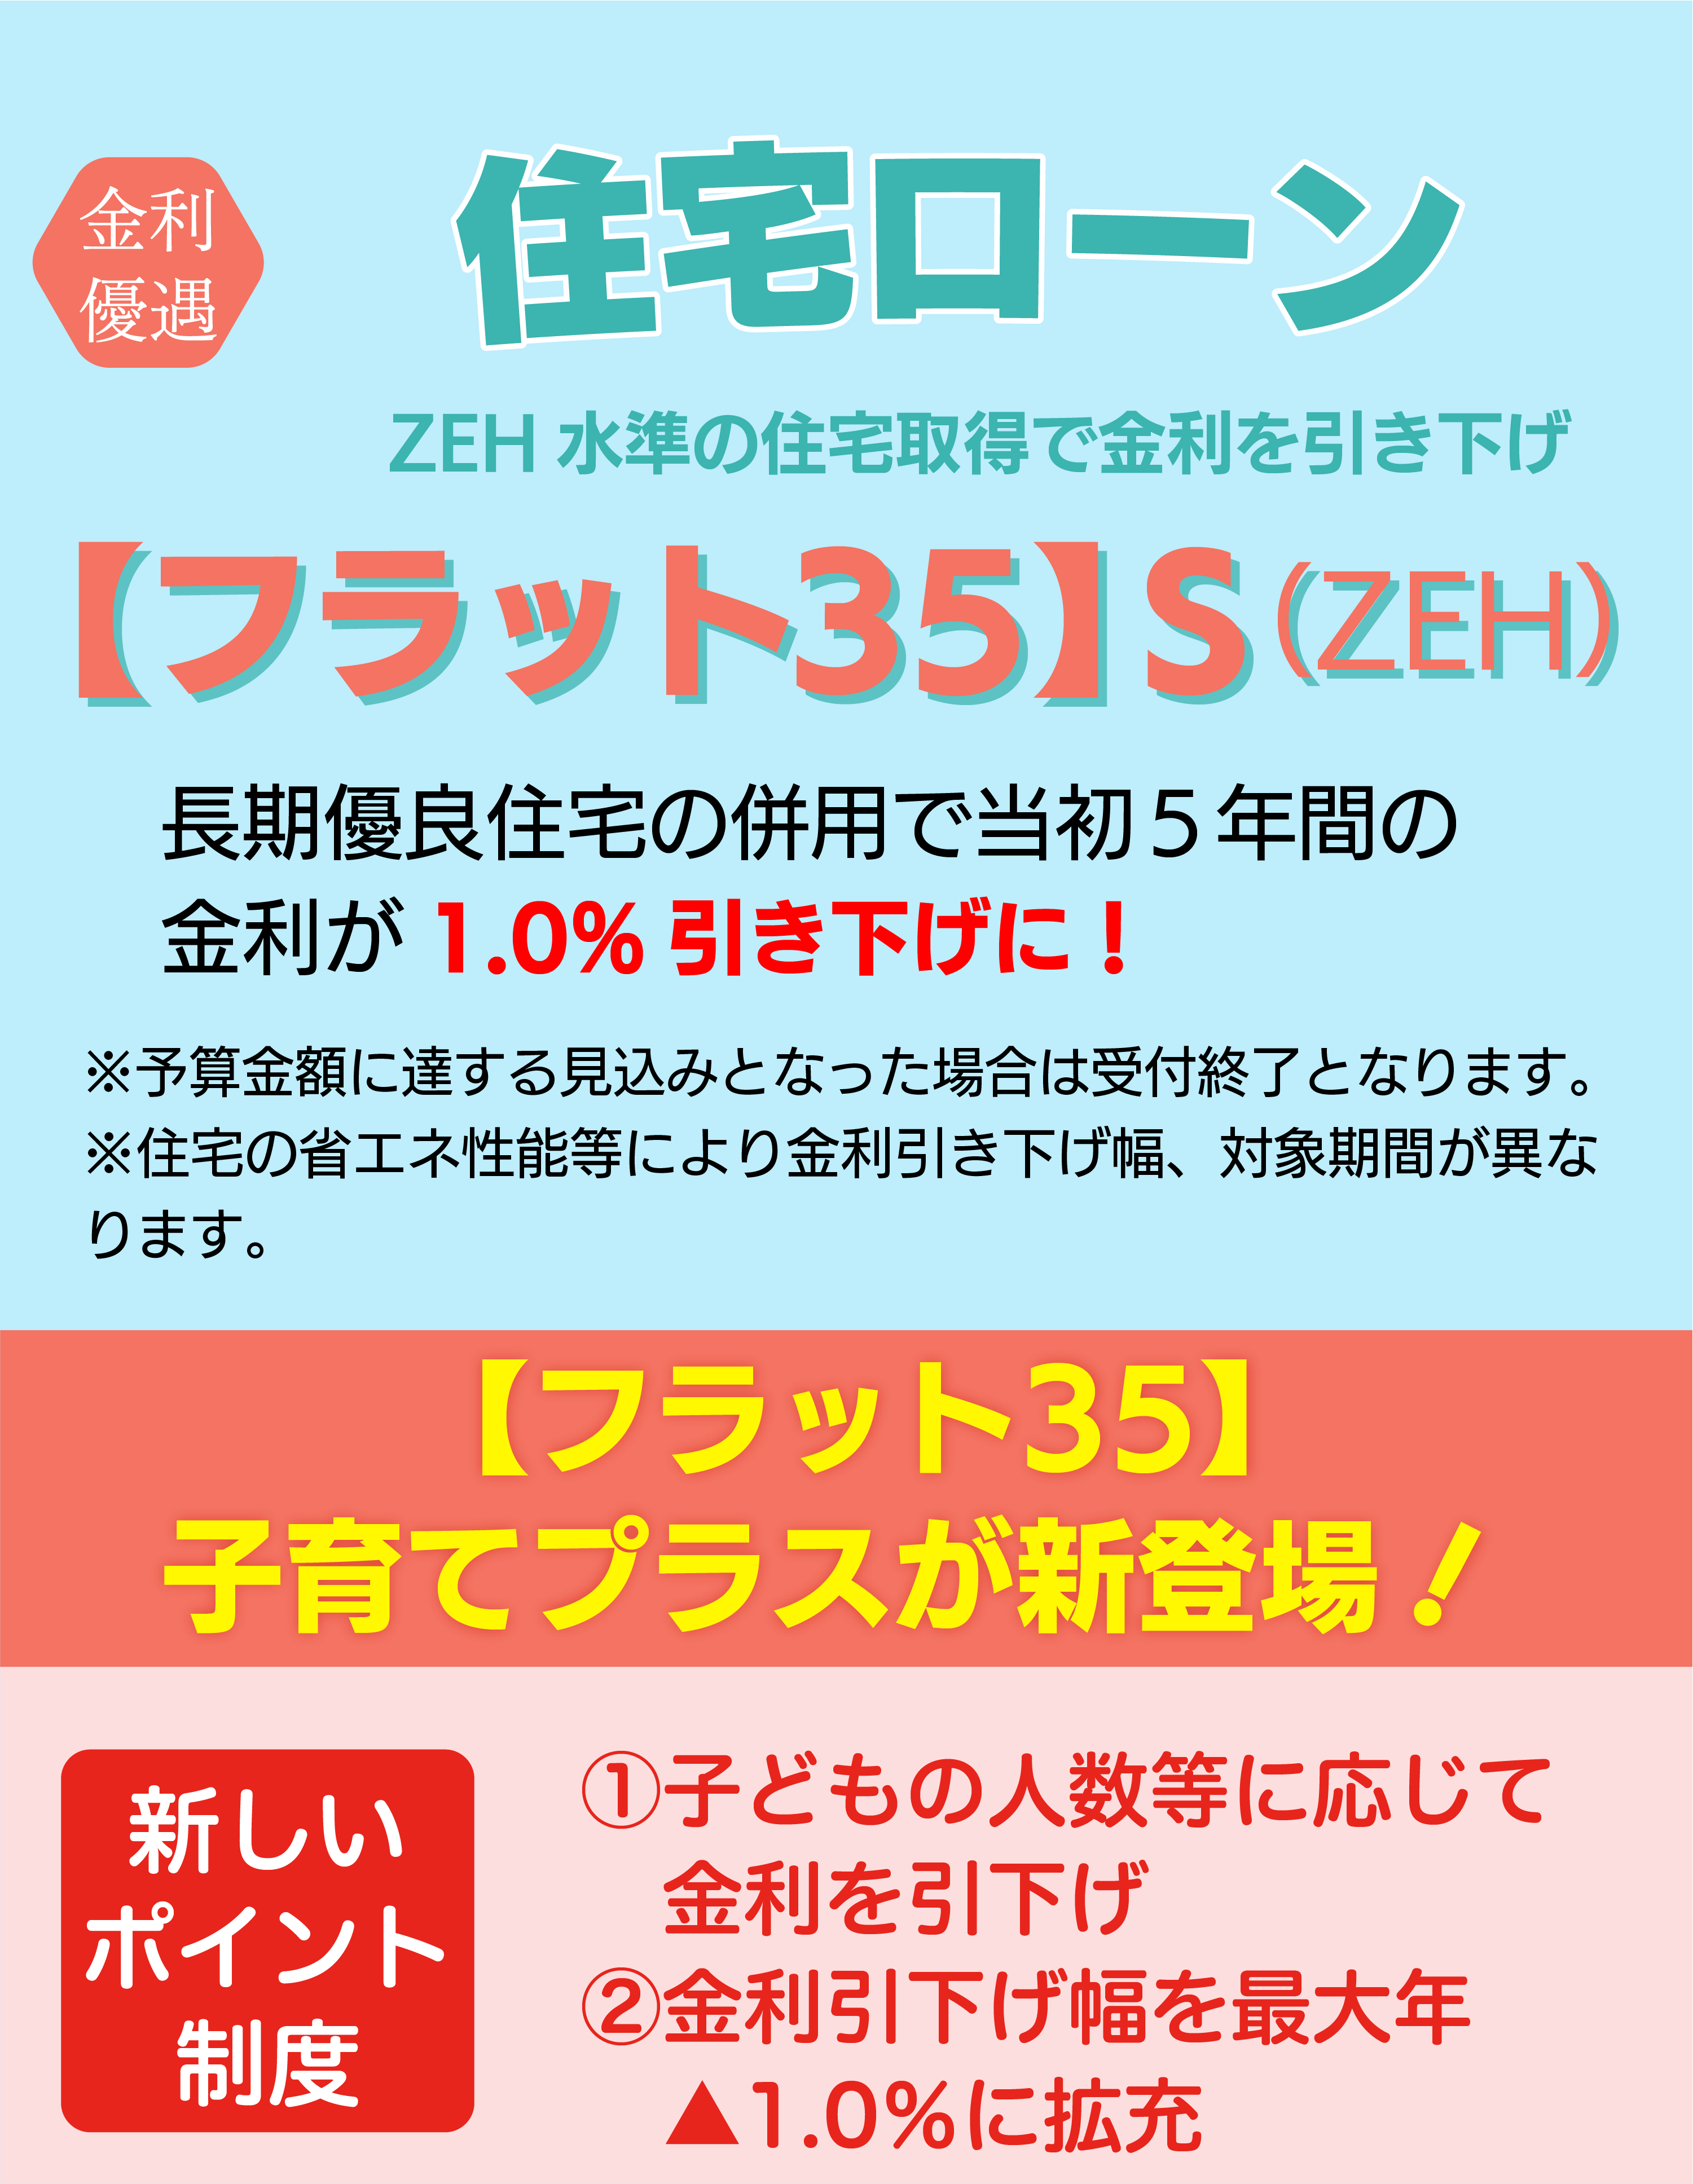 金利優遇 住宅ローン 【フラット35】S(ZEH)